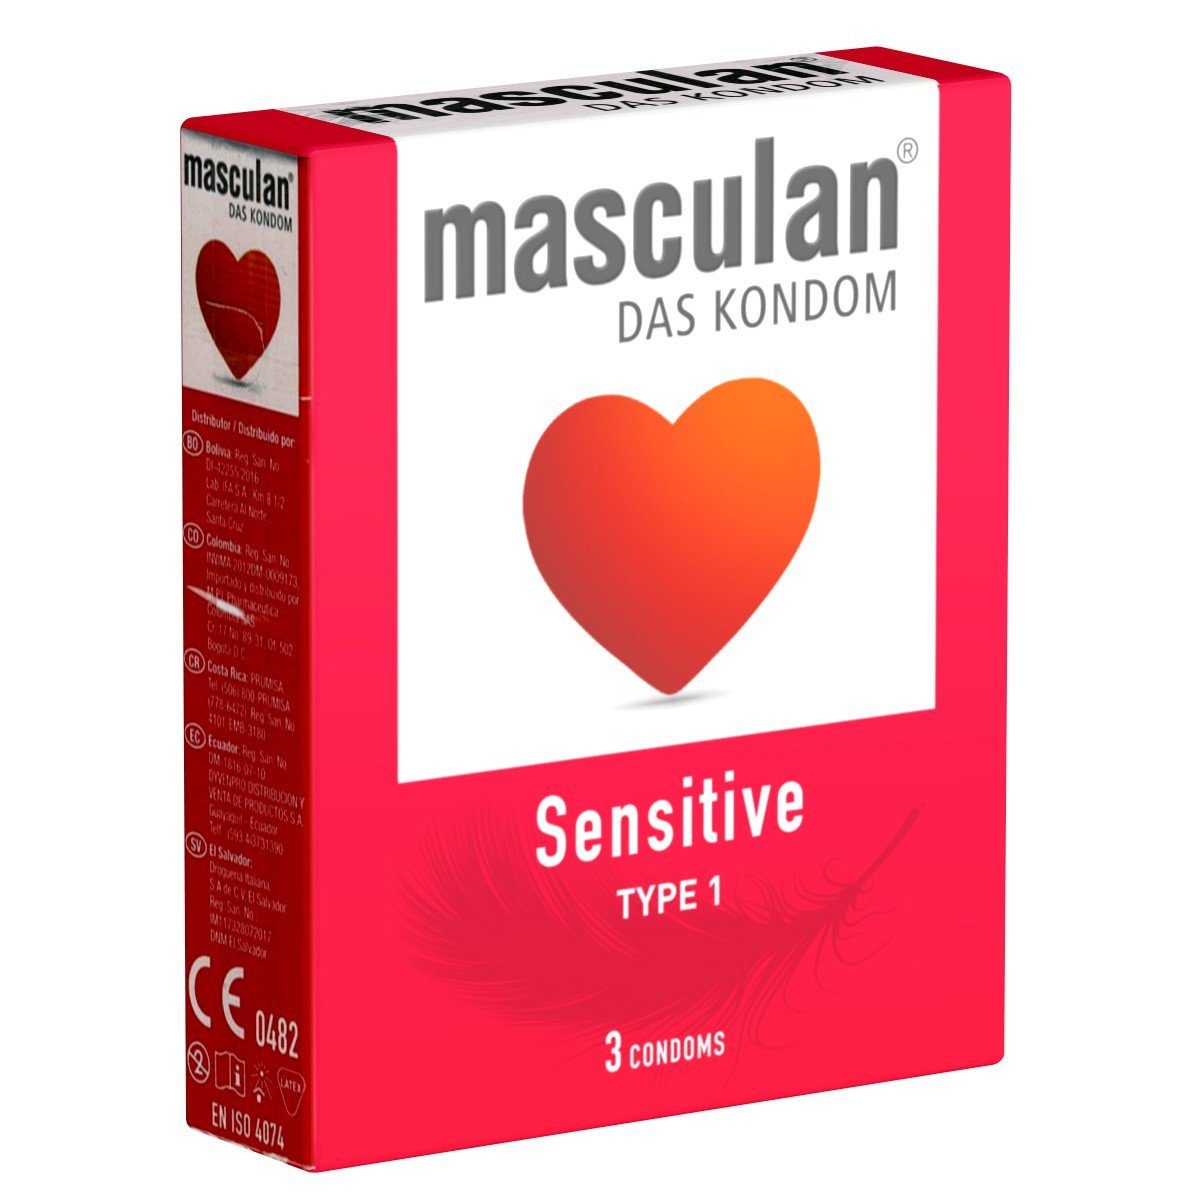 Masculan Kondome Typ 1 (sensitive) Packung mit, 3 St., zarte rosa Kondome für sinnliche Momente